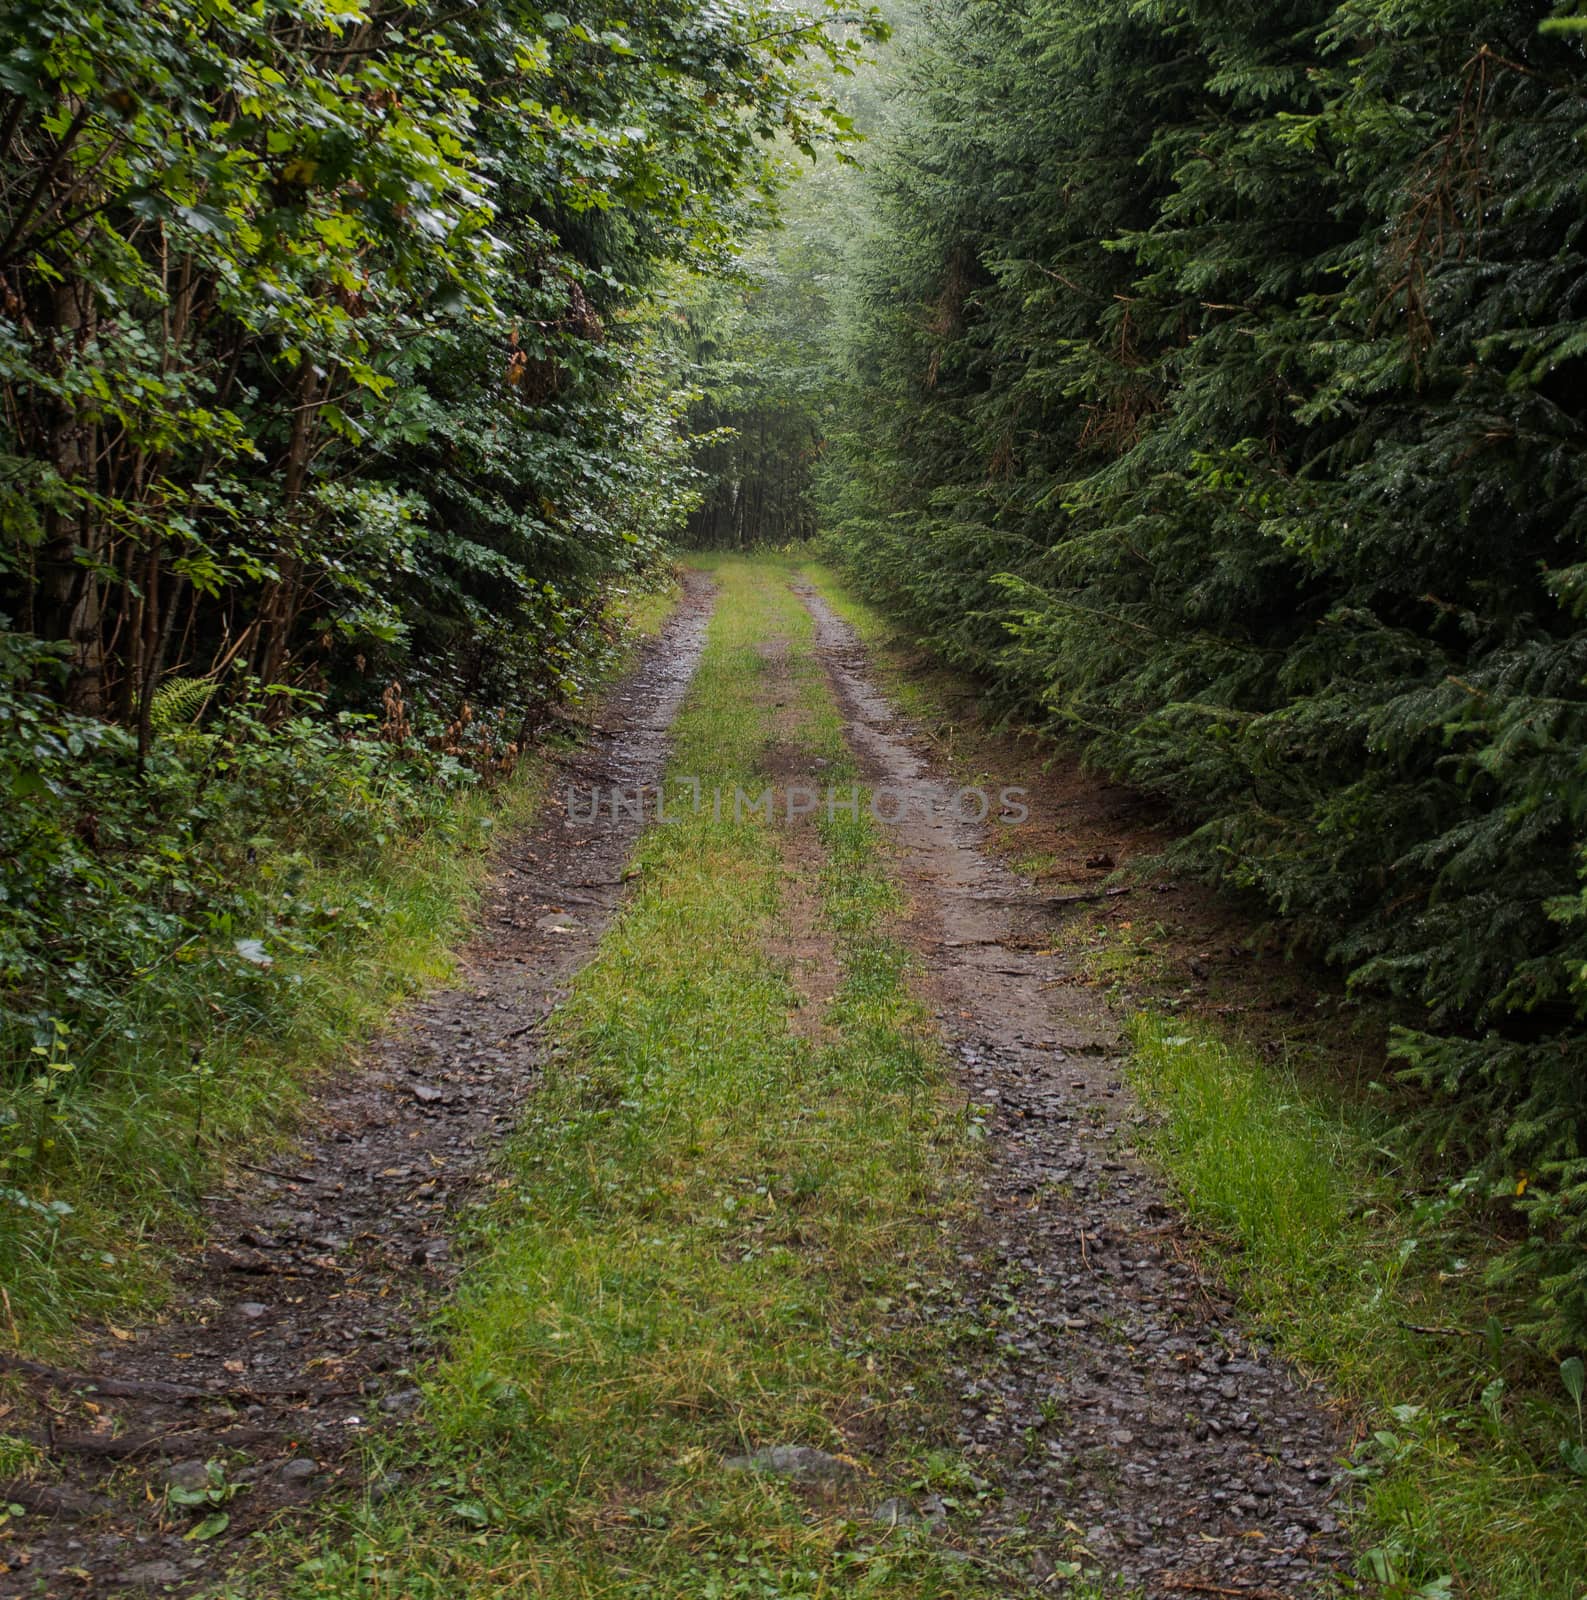 Aimless beaten track through the dark forest by weruskak